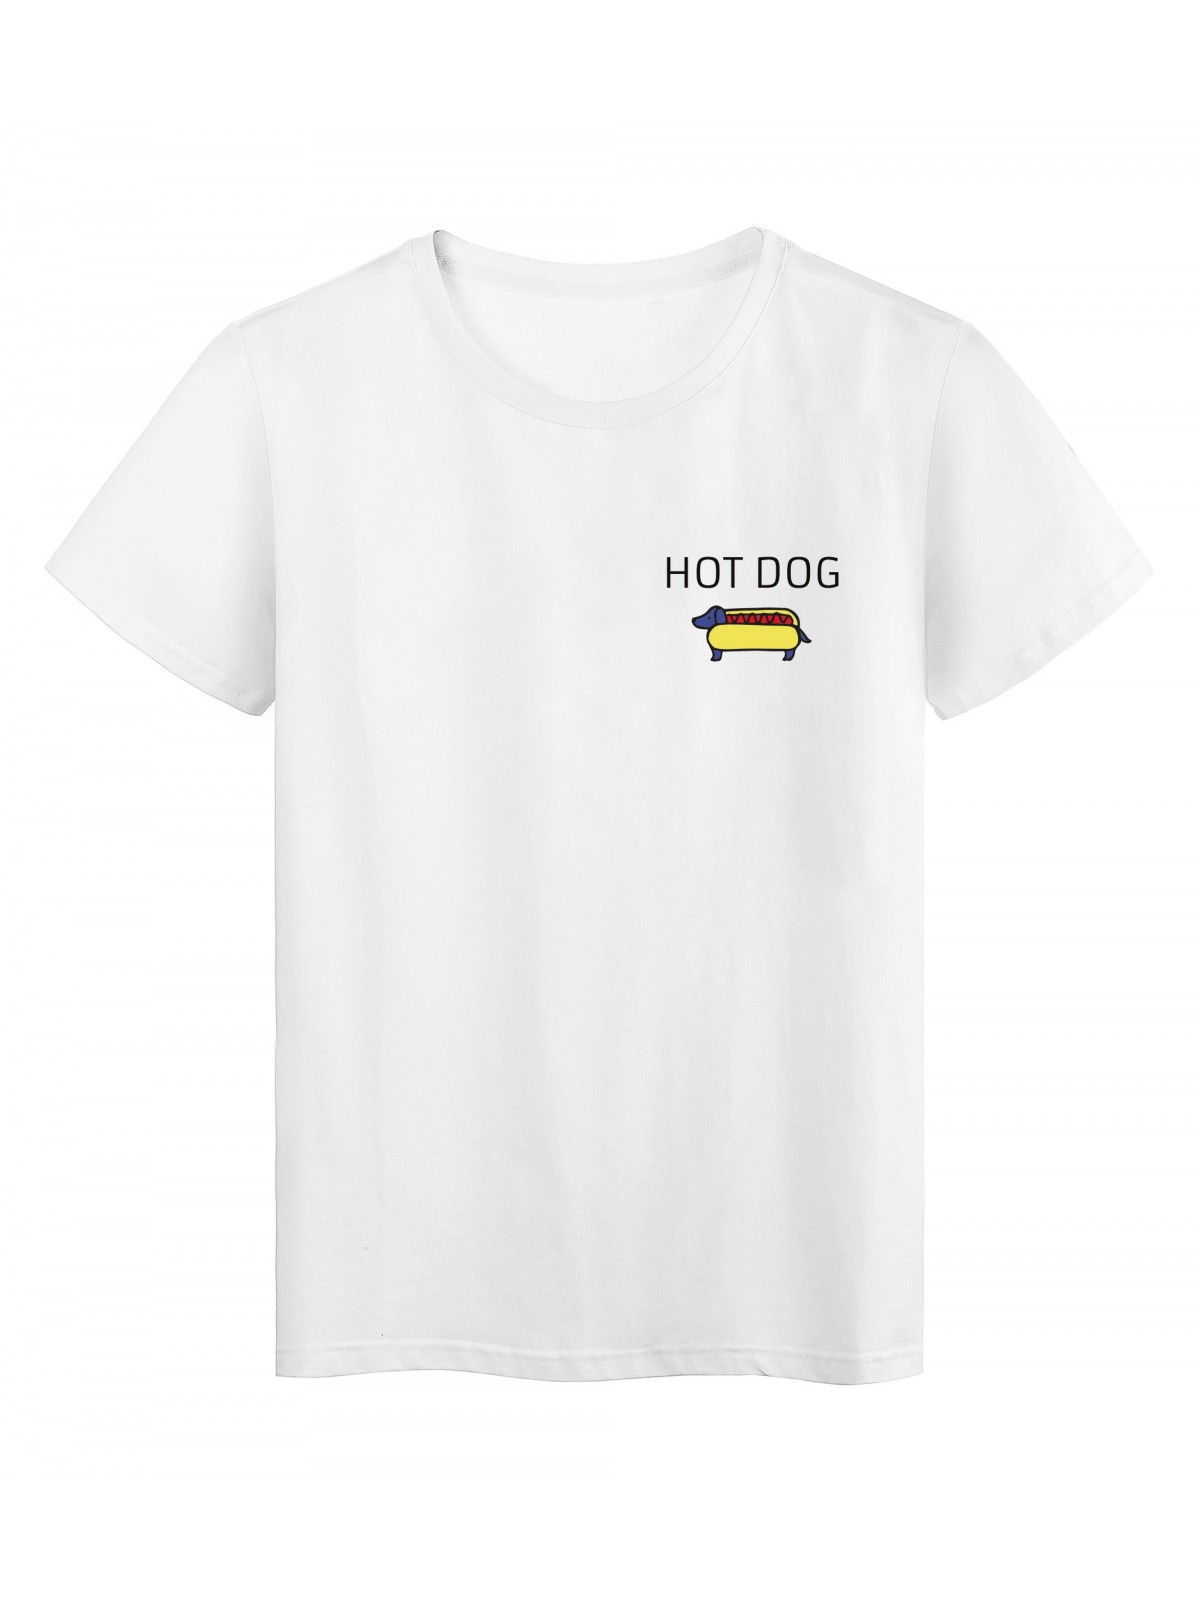 T-Shirt imprimÃ© citation humour Hot dog